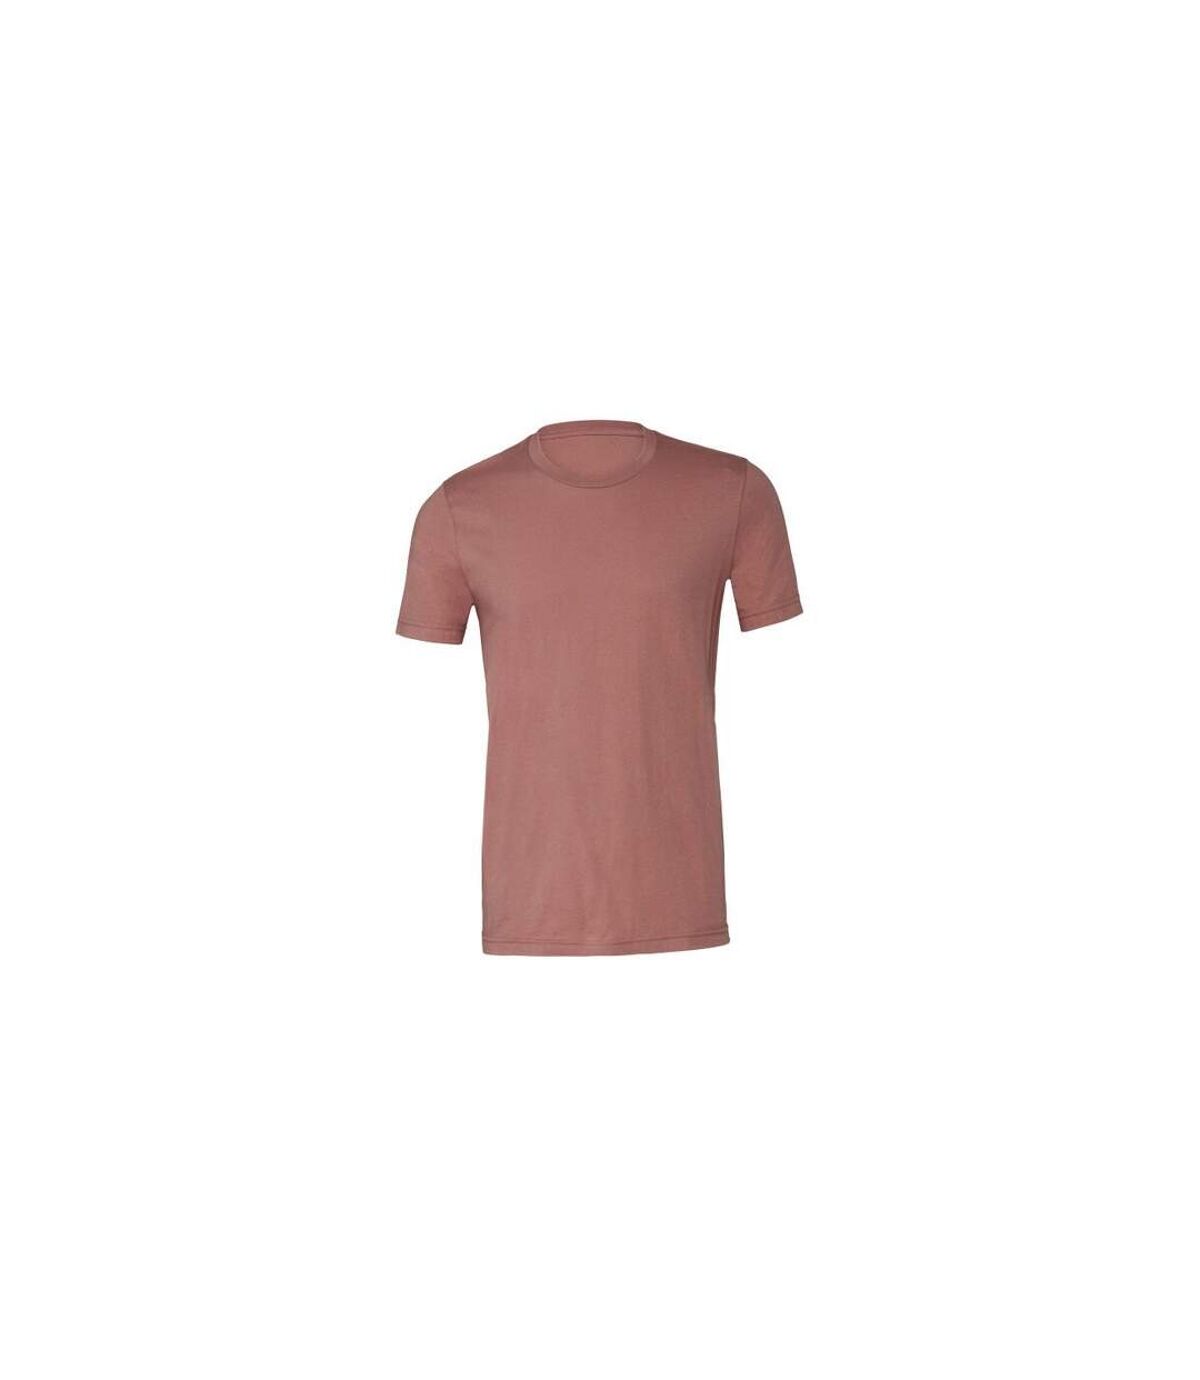 Canvas - T-shirt JERSEY - Hommes (Mauve) - UTBC163